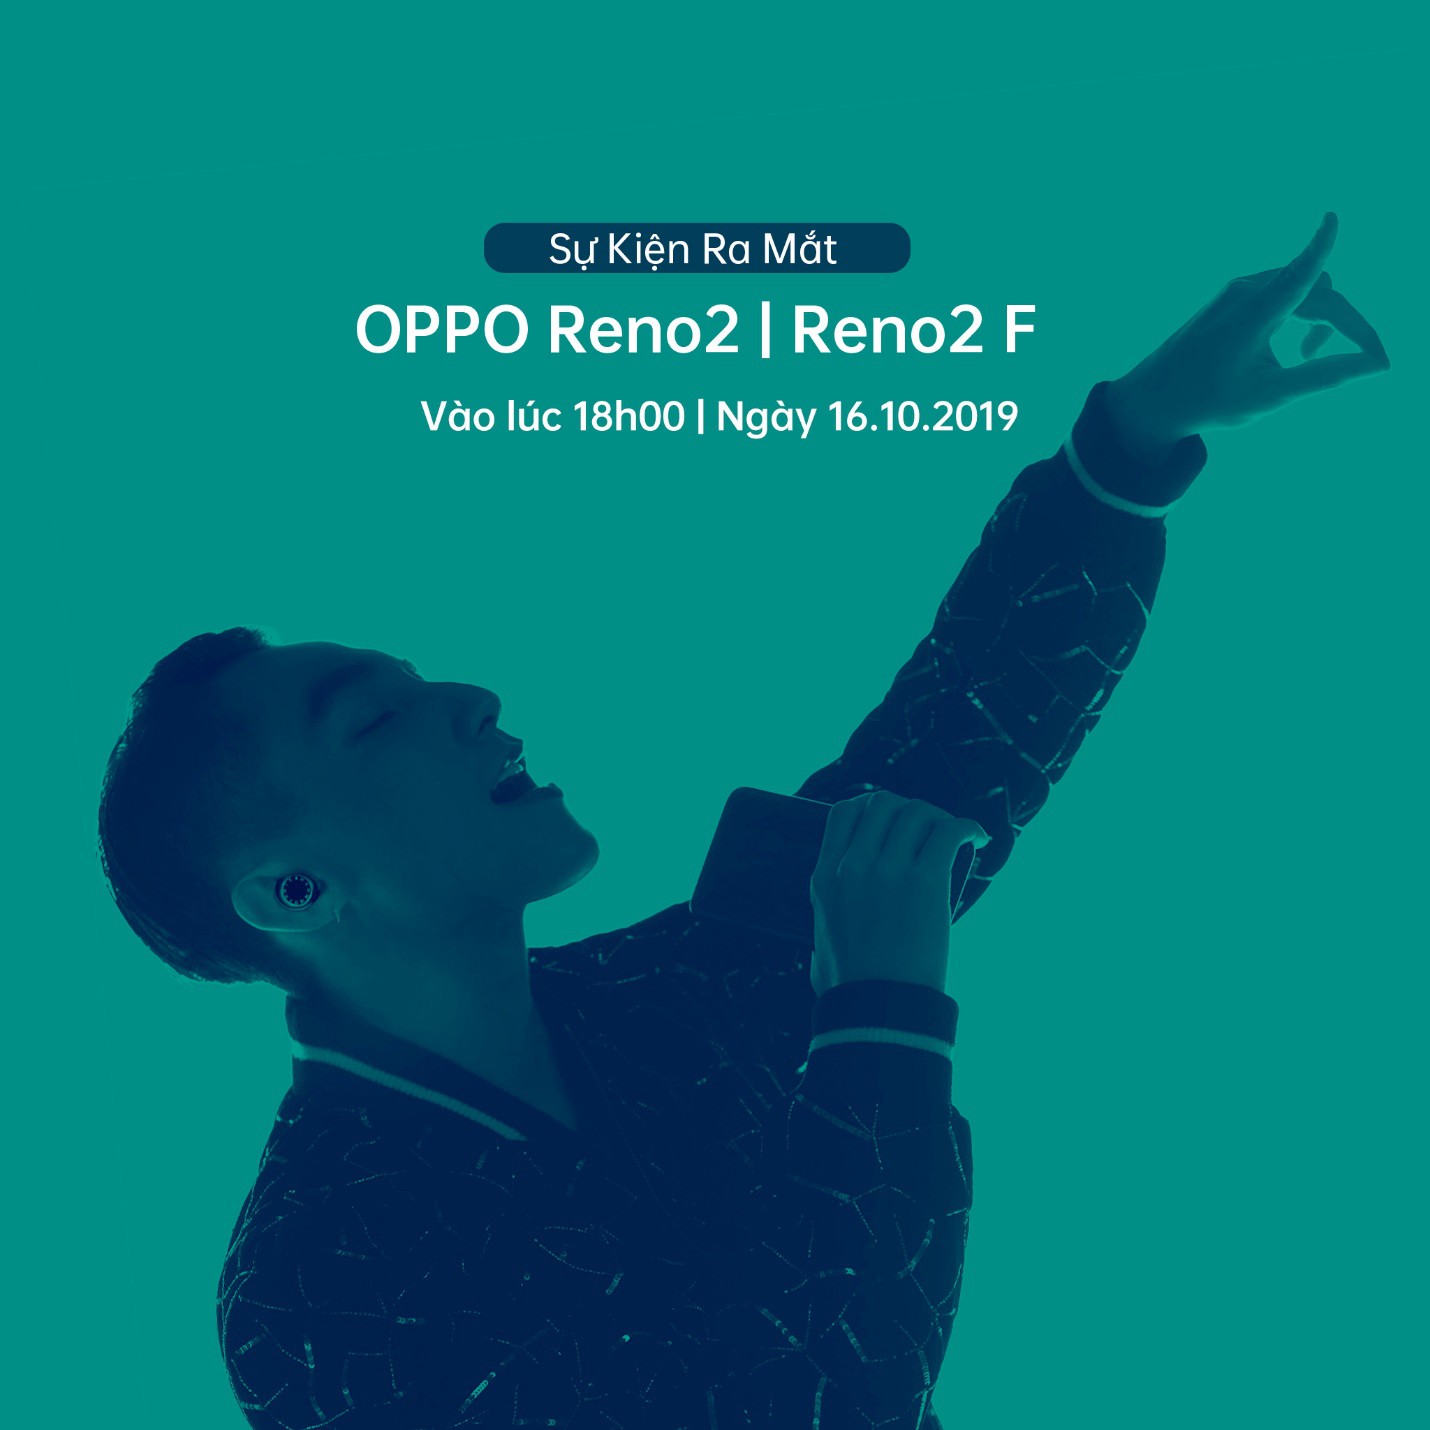 Tiết lộ về màn trình diễn đặc biệt của Sơn Tùng M-TP trong buổi ra mắt OPPO Reno2 Series - Ảnh 4.